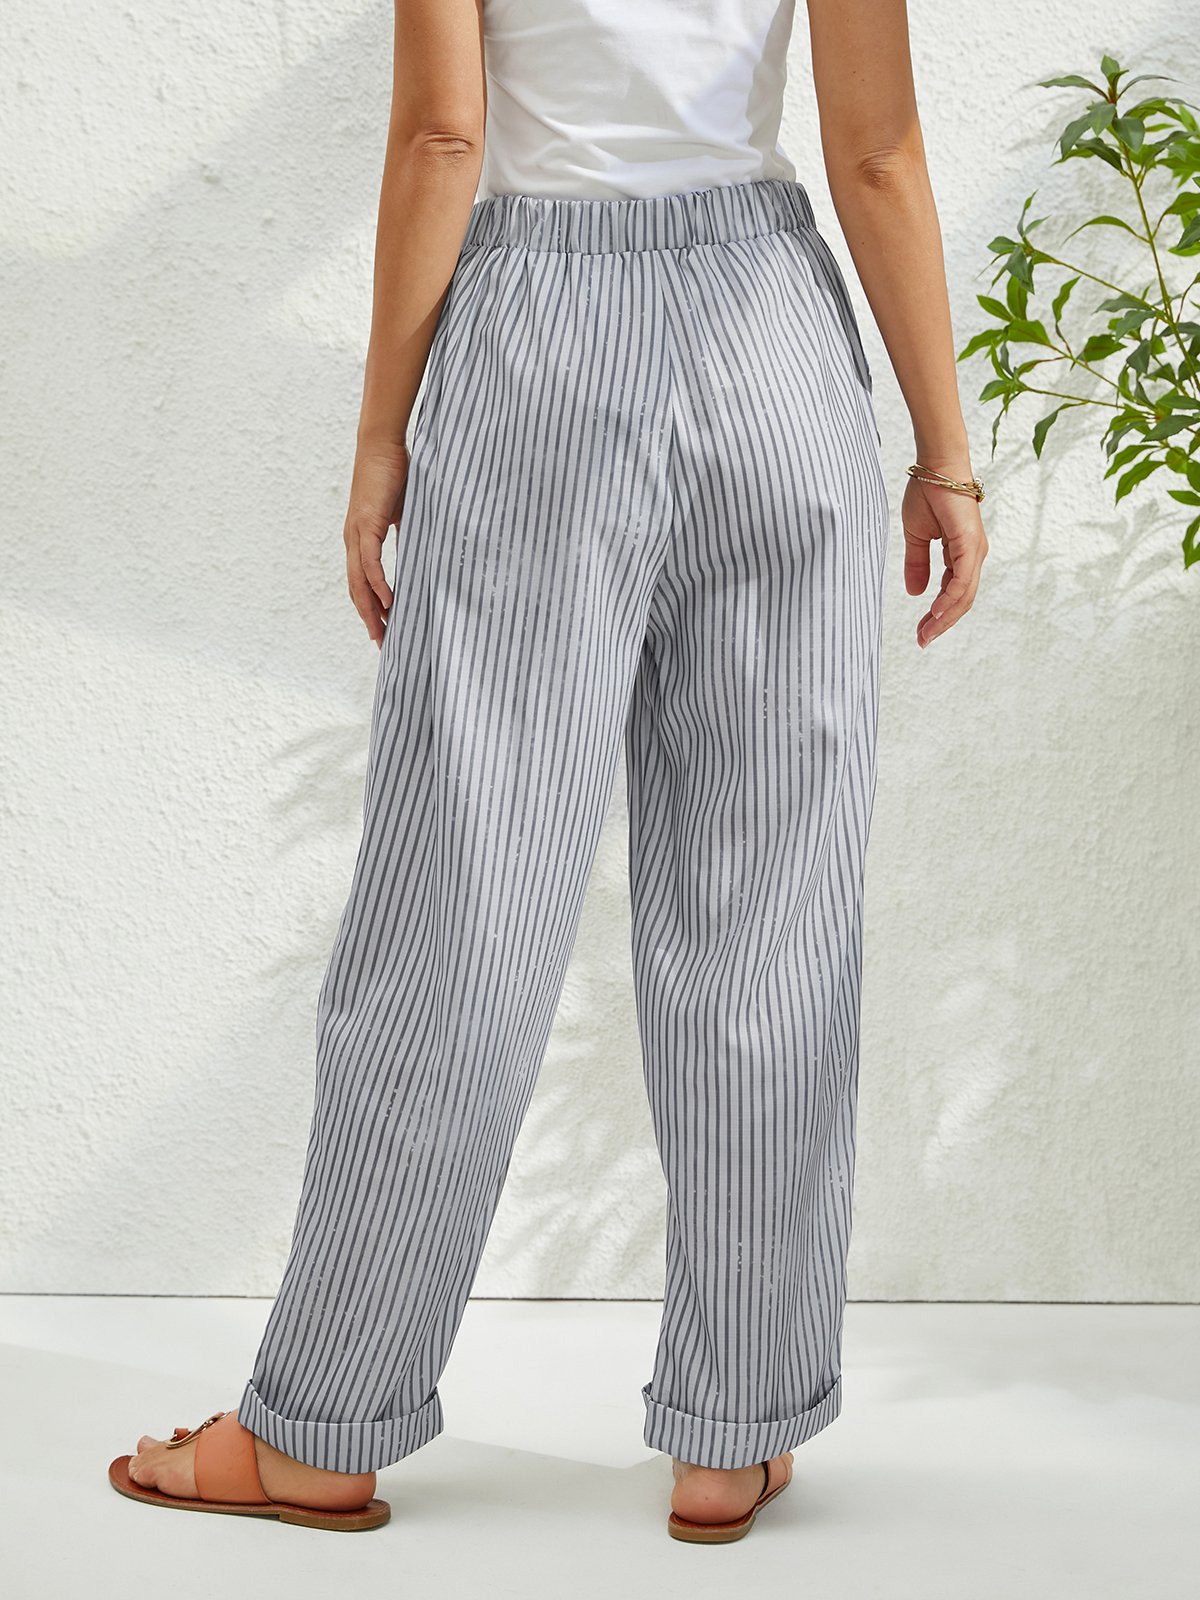 Striped Pocket Design Loose Pants